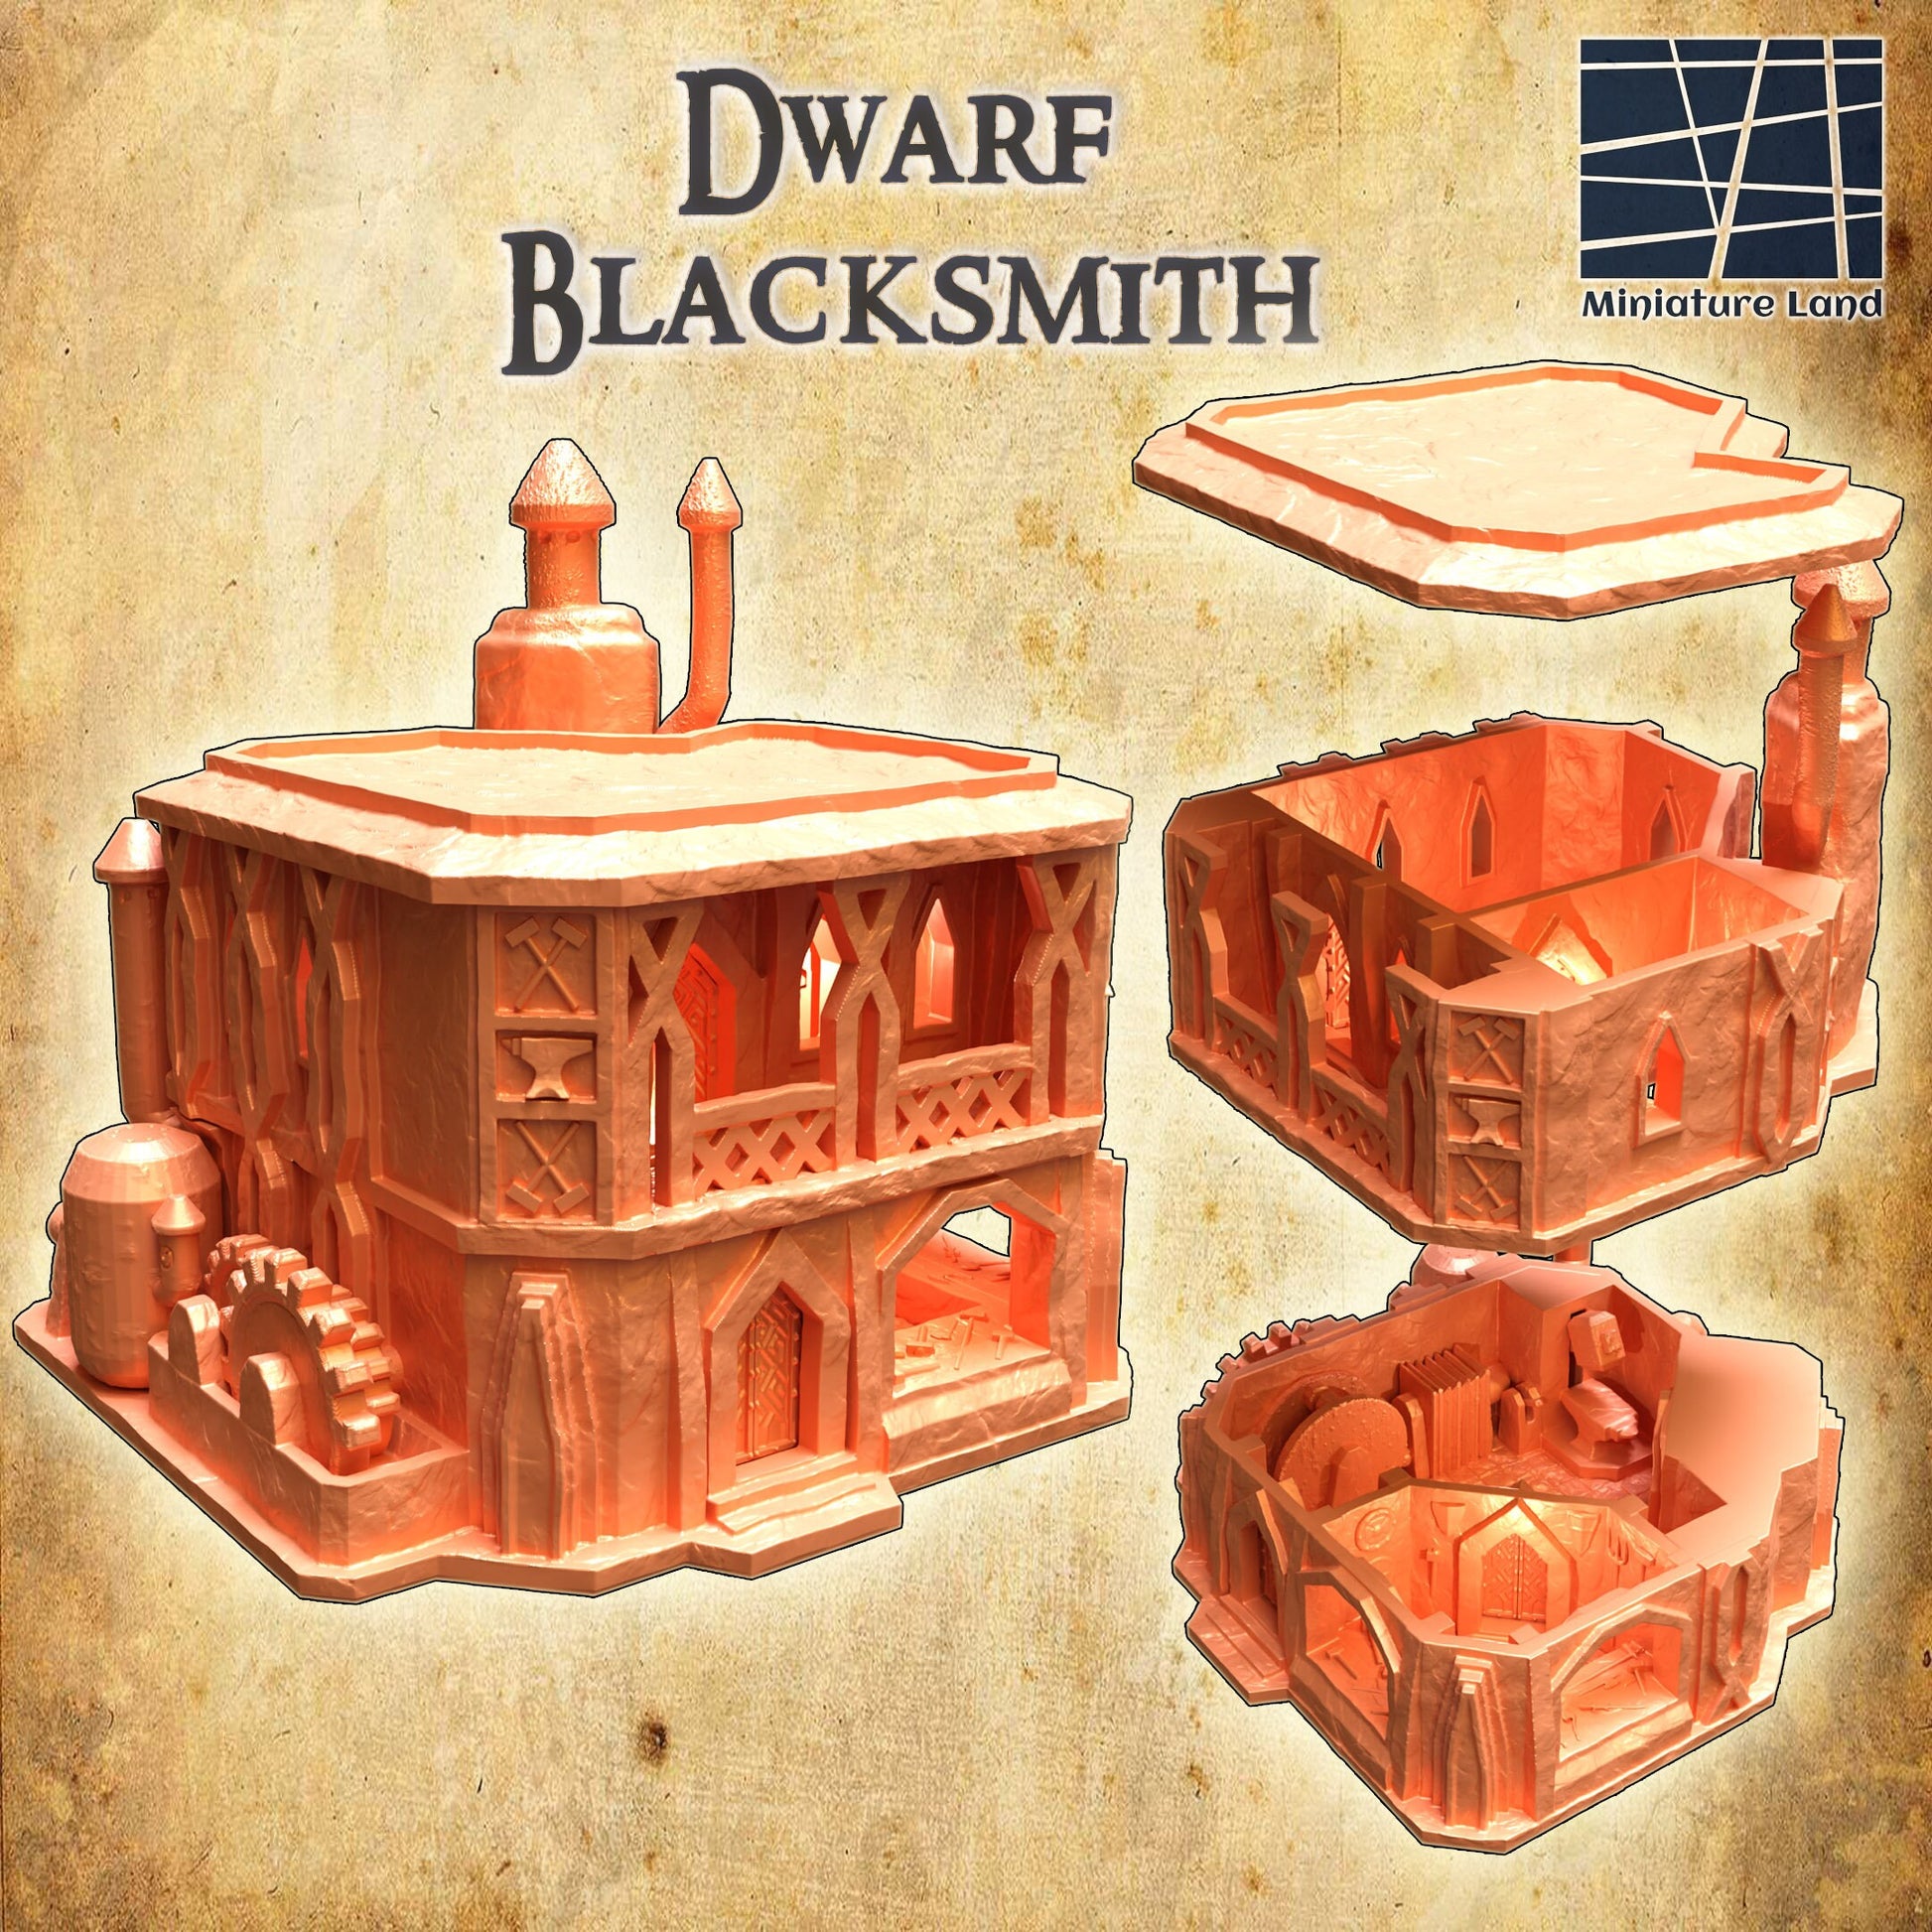 Dwarven Blacksmith Shop, Dwarf Blacksmith, Blacksmith